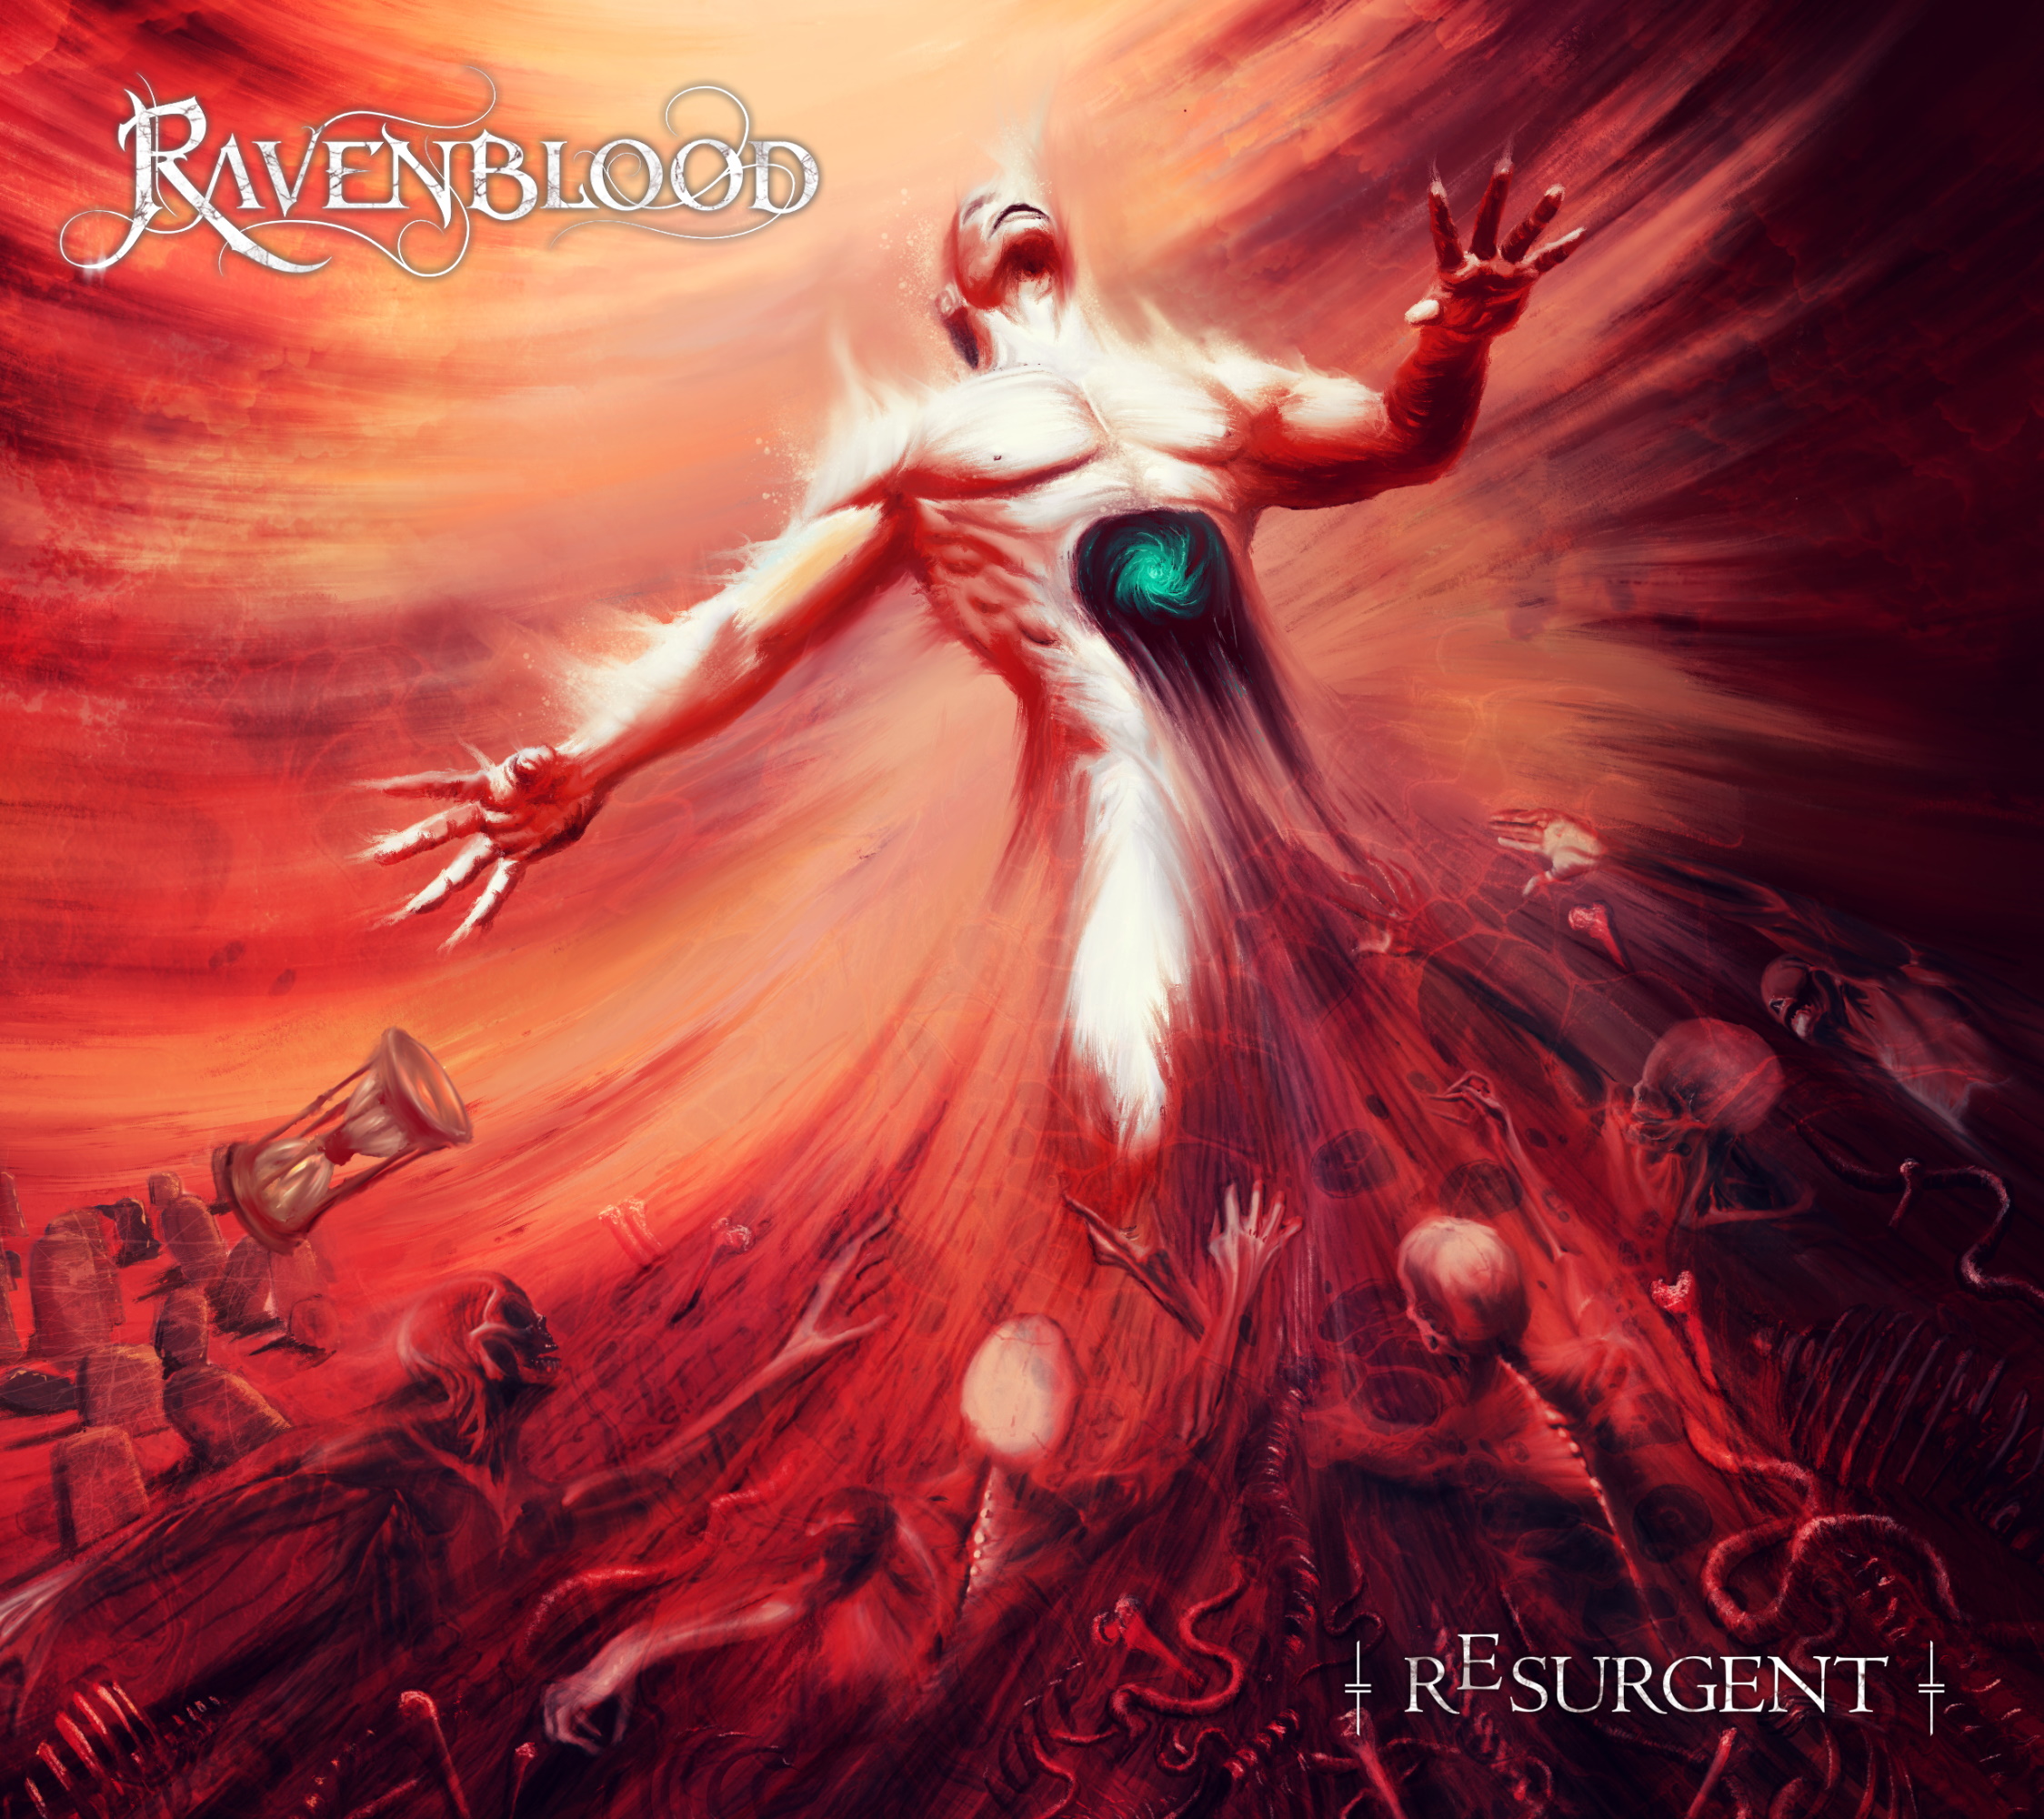 Ravenblood estrena el single y vídeo “Resurgent”